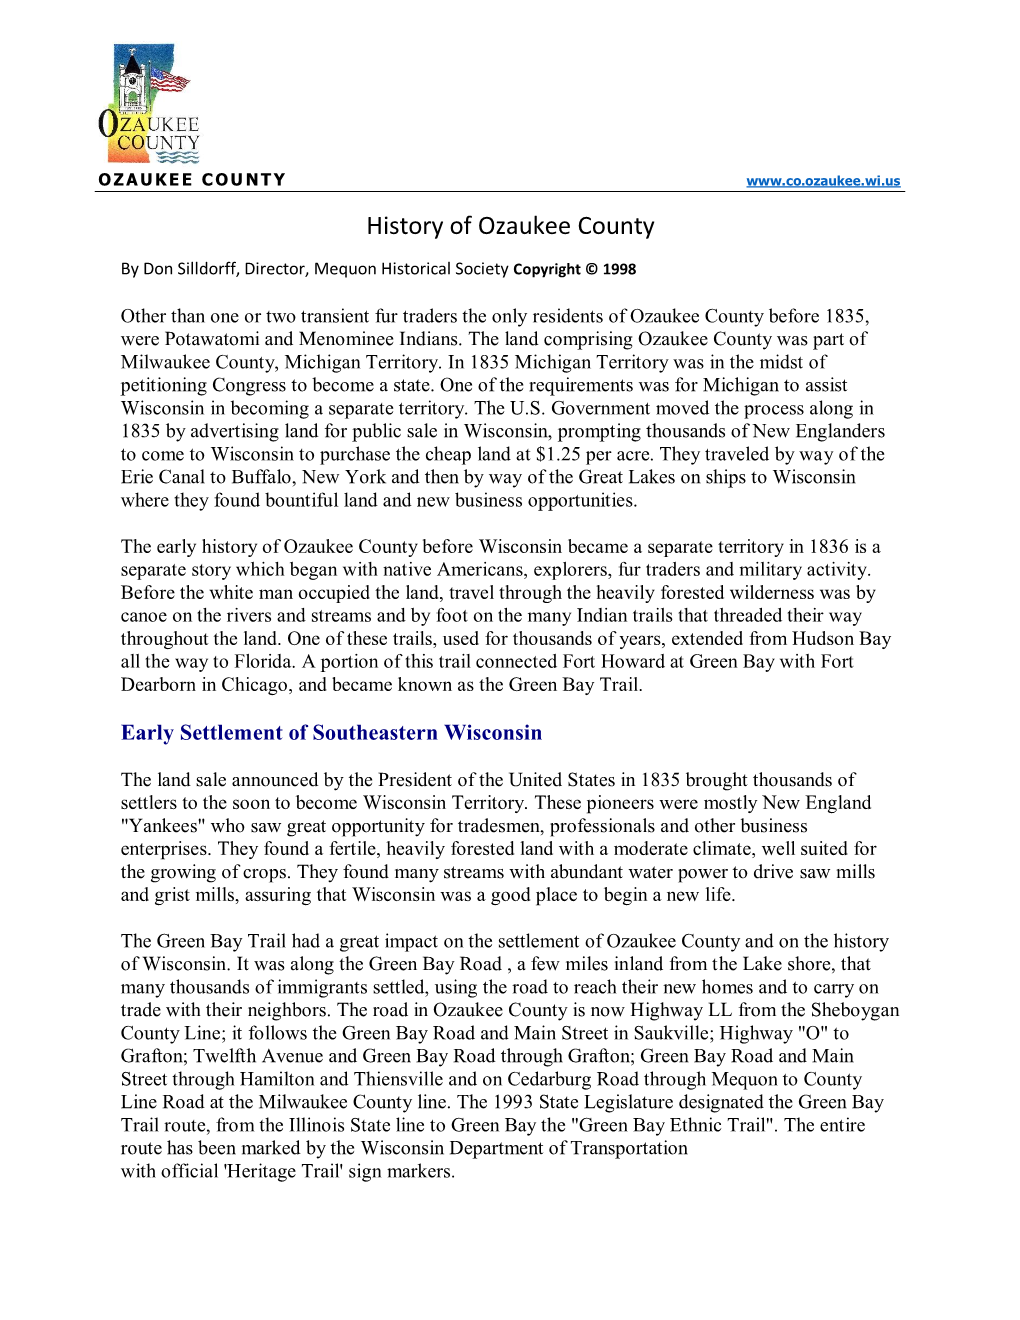 History of Ozaukee County